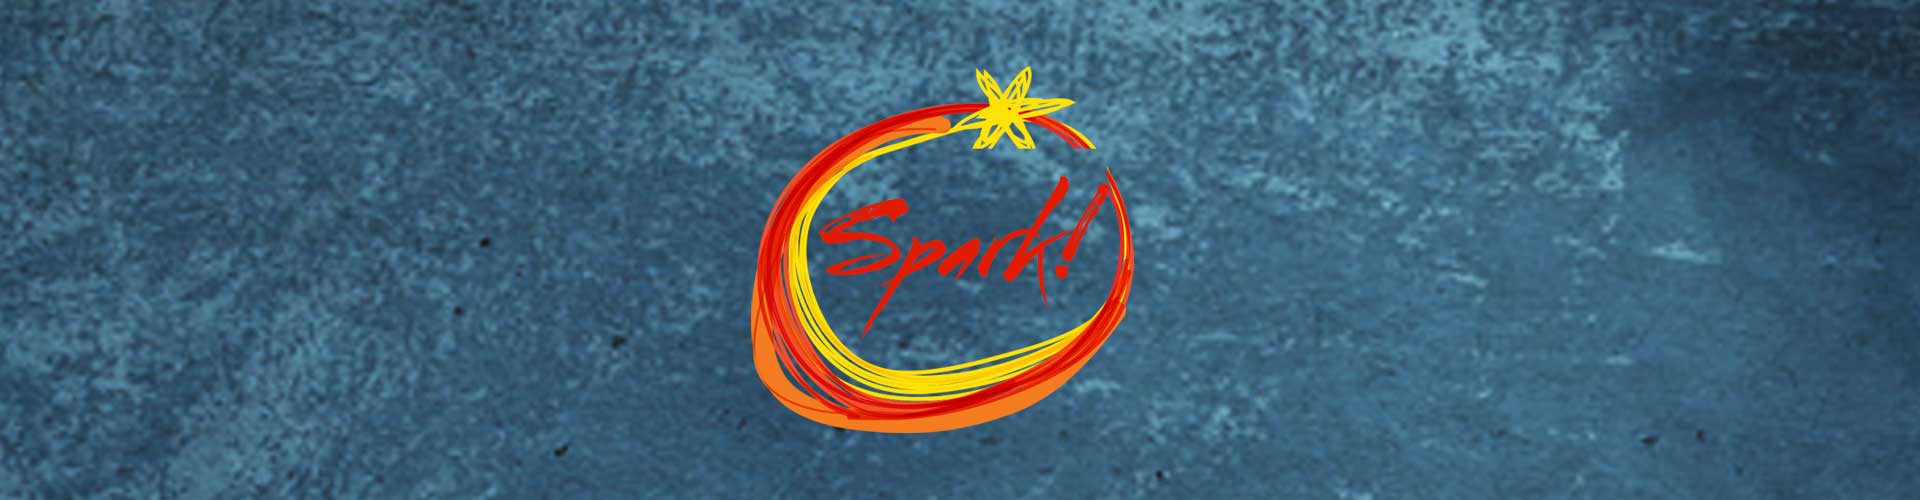 TEDxGreensboro 2015 Spark!